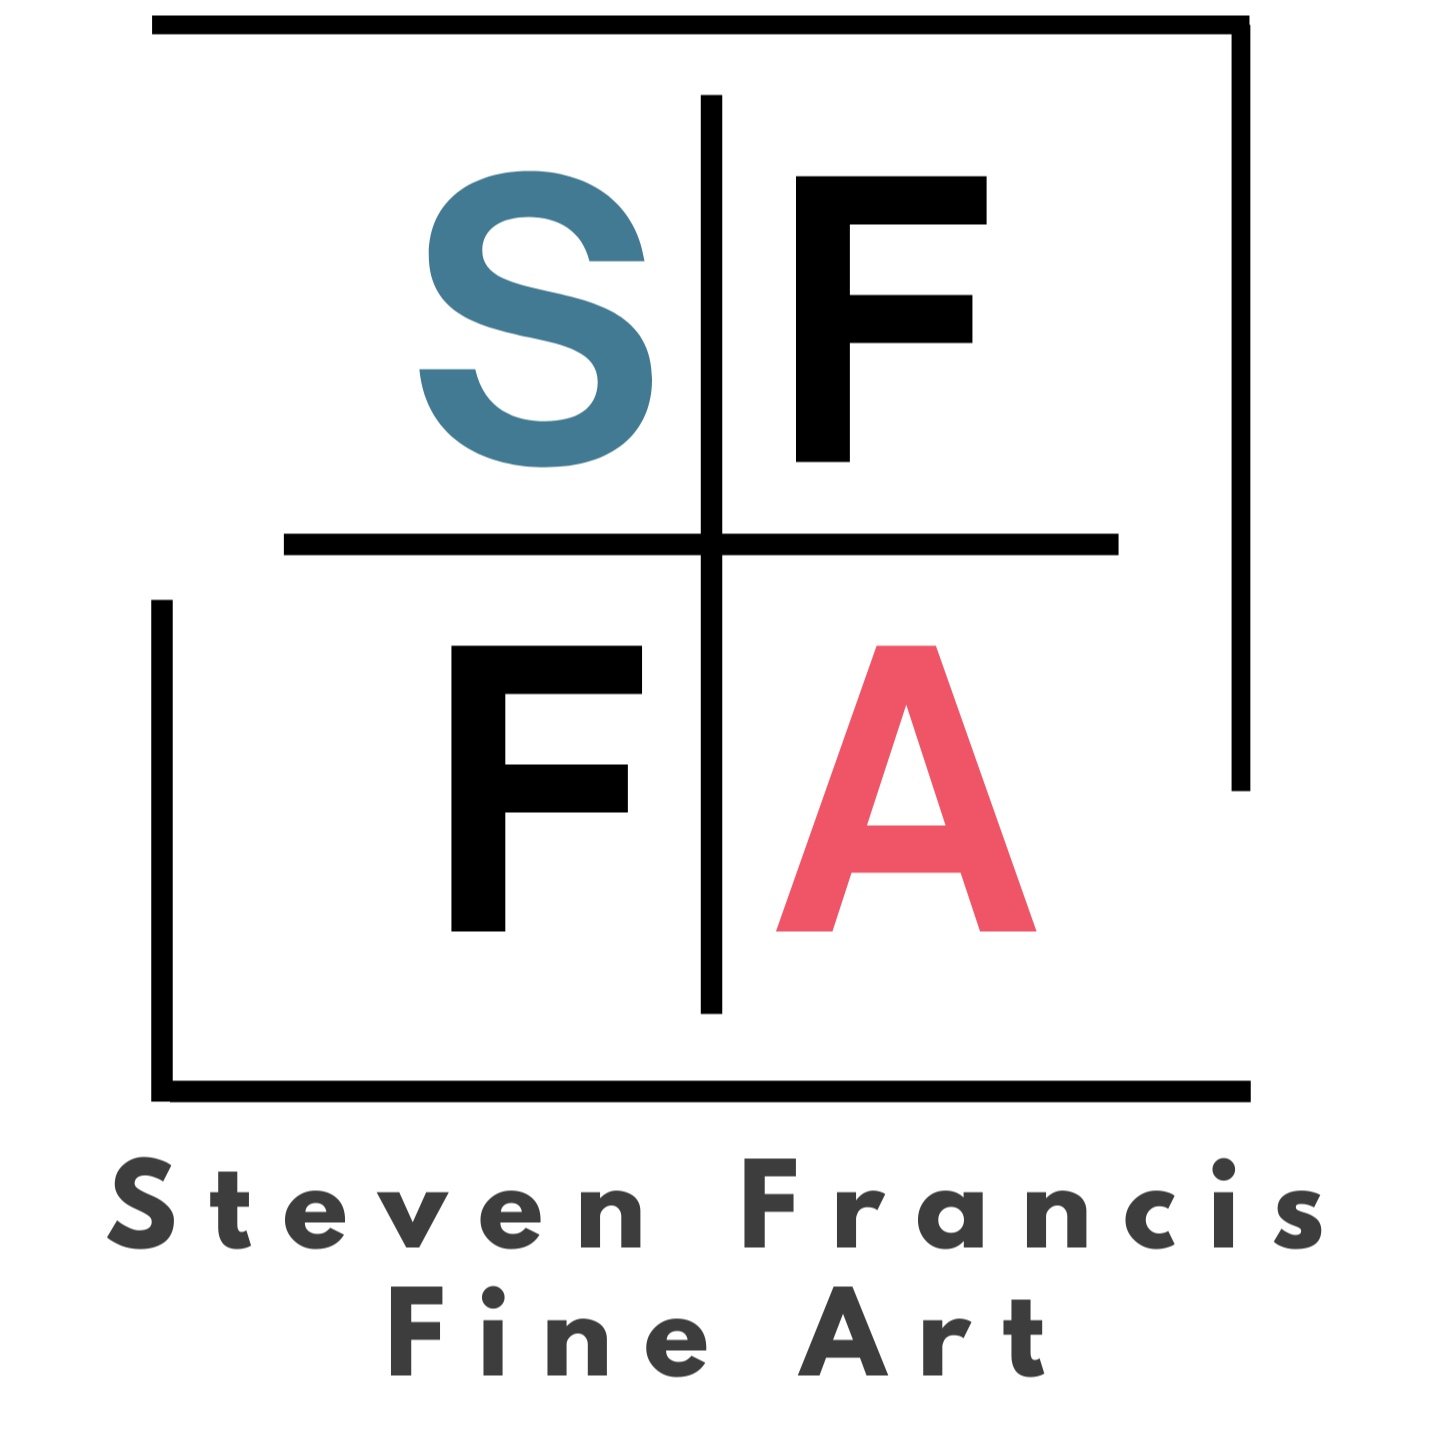 Steven Francis Fine Art